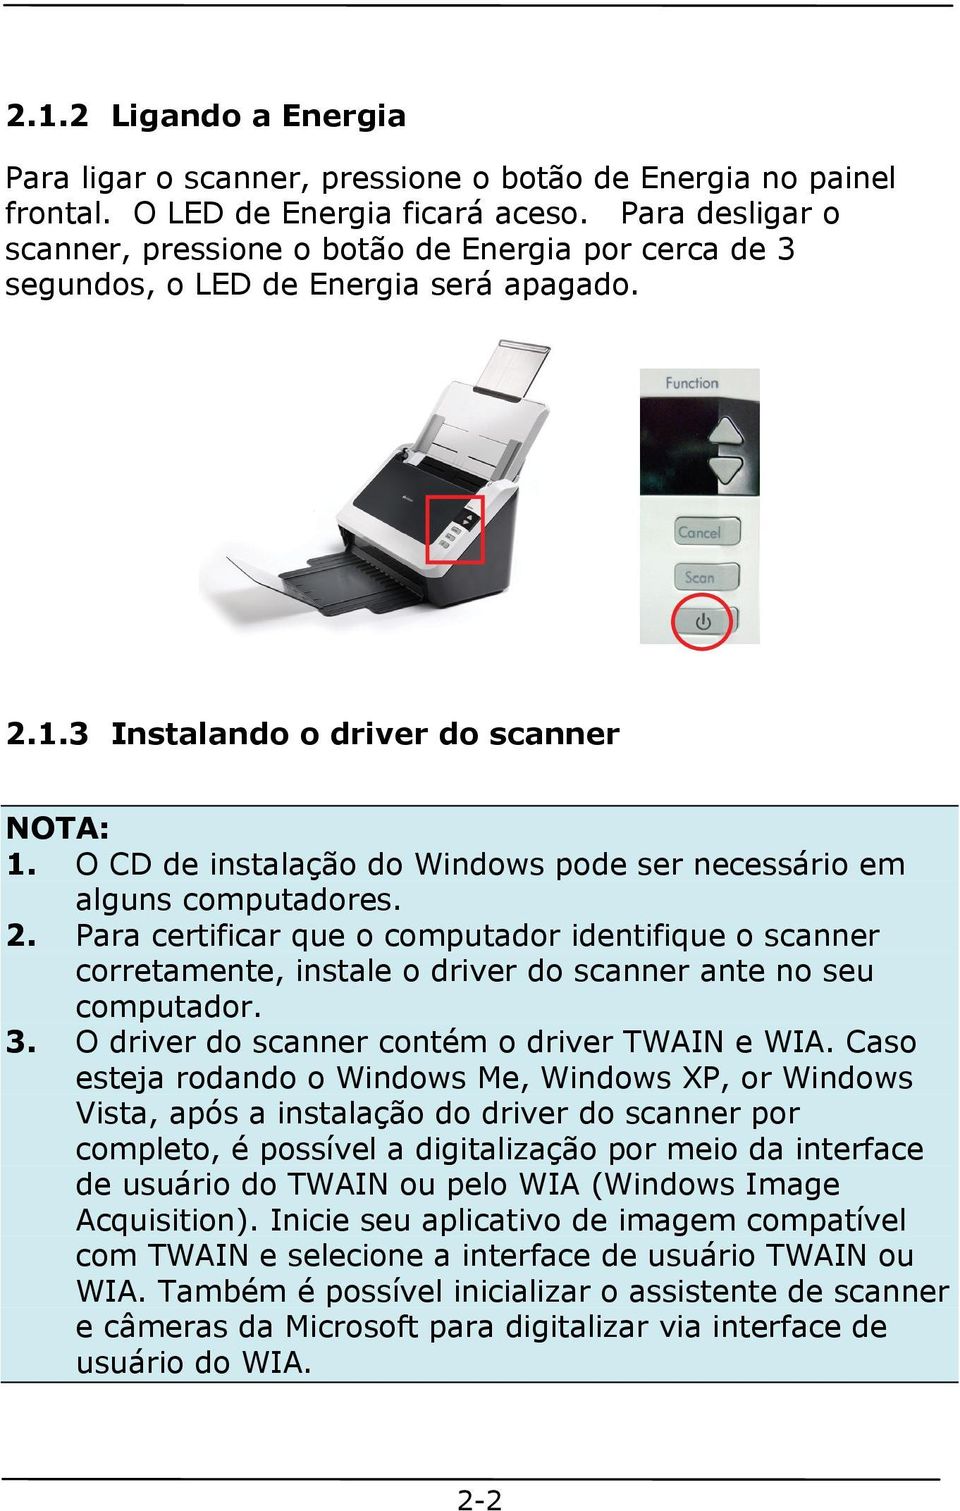 O CD de instalação do Windows pode ser necessário em alguns computadores. 2. Para certificar que o computador identifique o scanner corretamente, instale o driver do scanner ante no seu computador. 3.